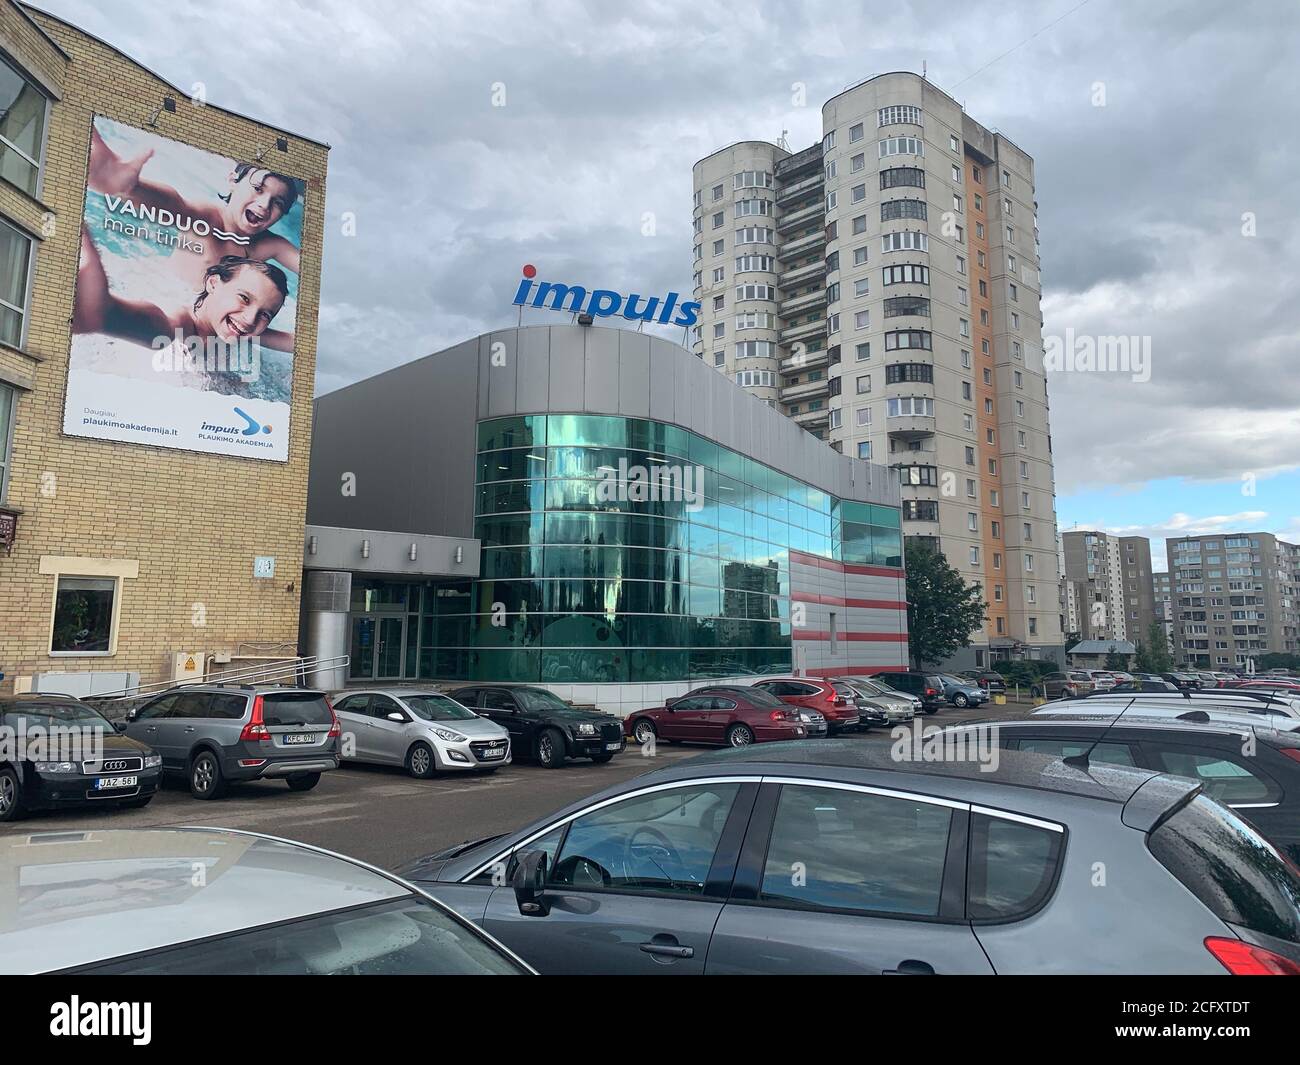 Club de sport Impuls dans le quartier de Fabijoniskes. Vilnius / Lituanie Banque D'Images